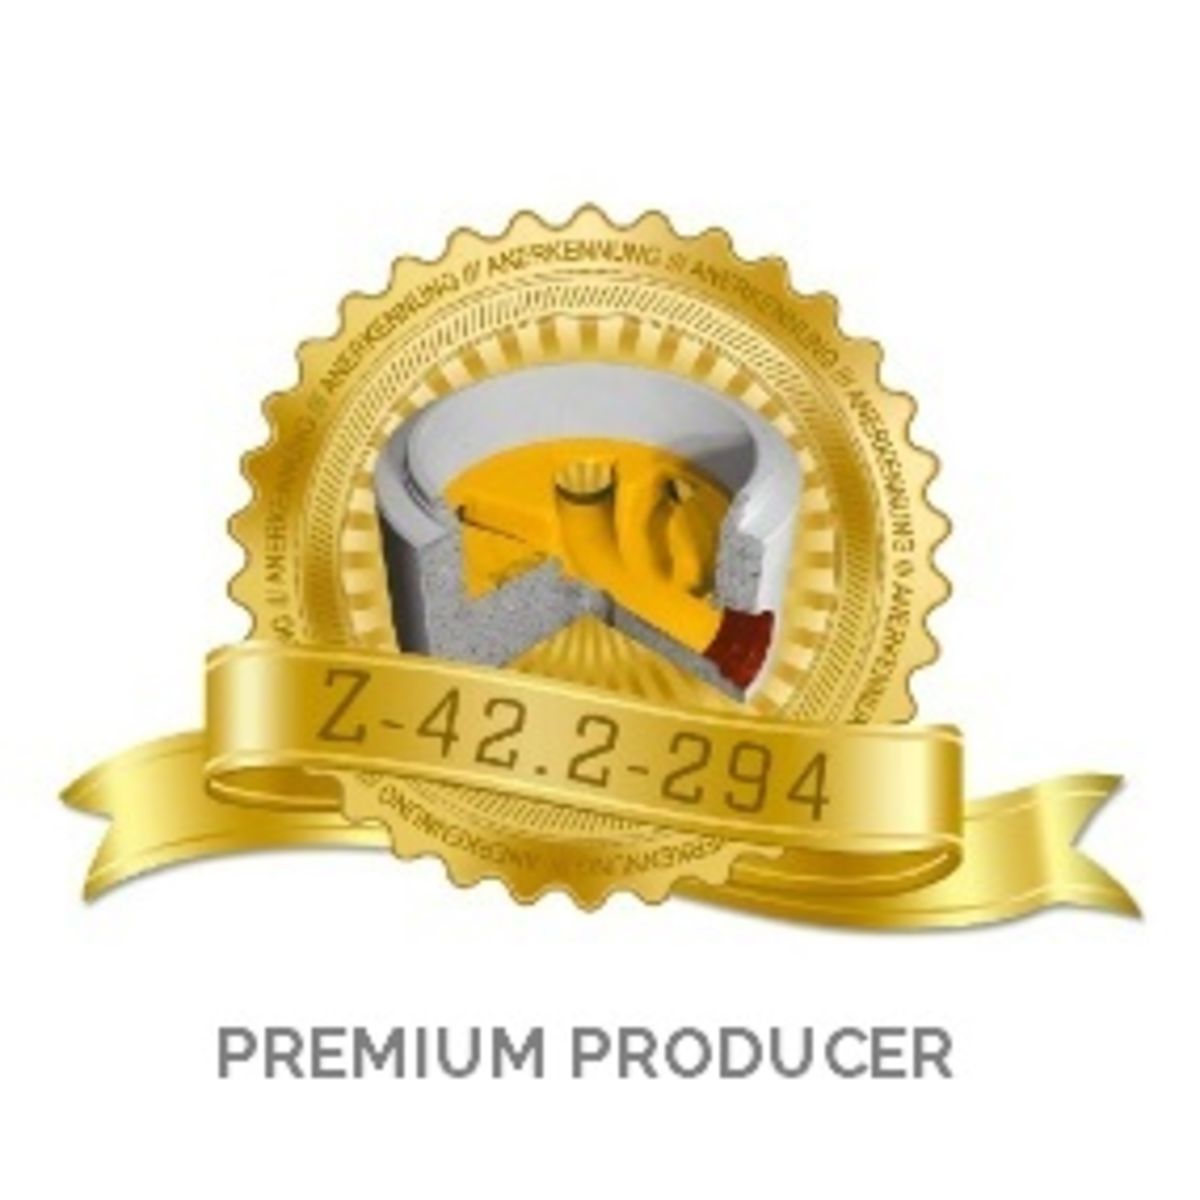 Premium Producer